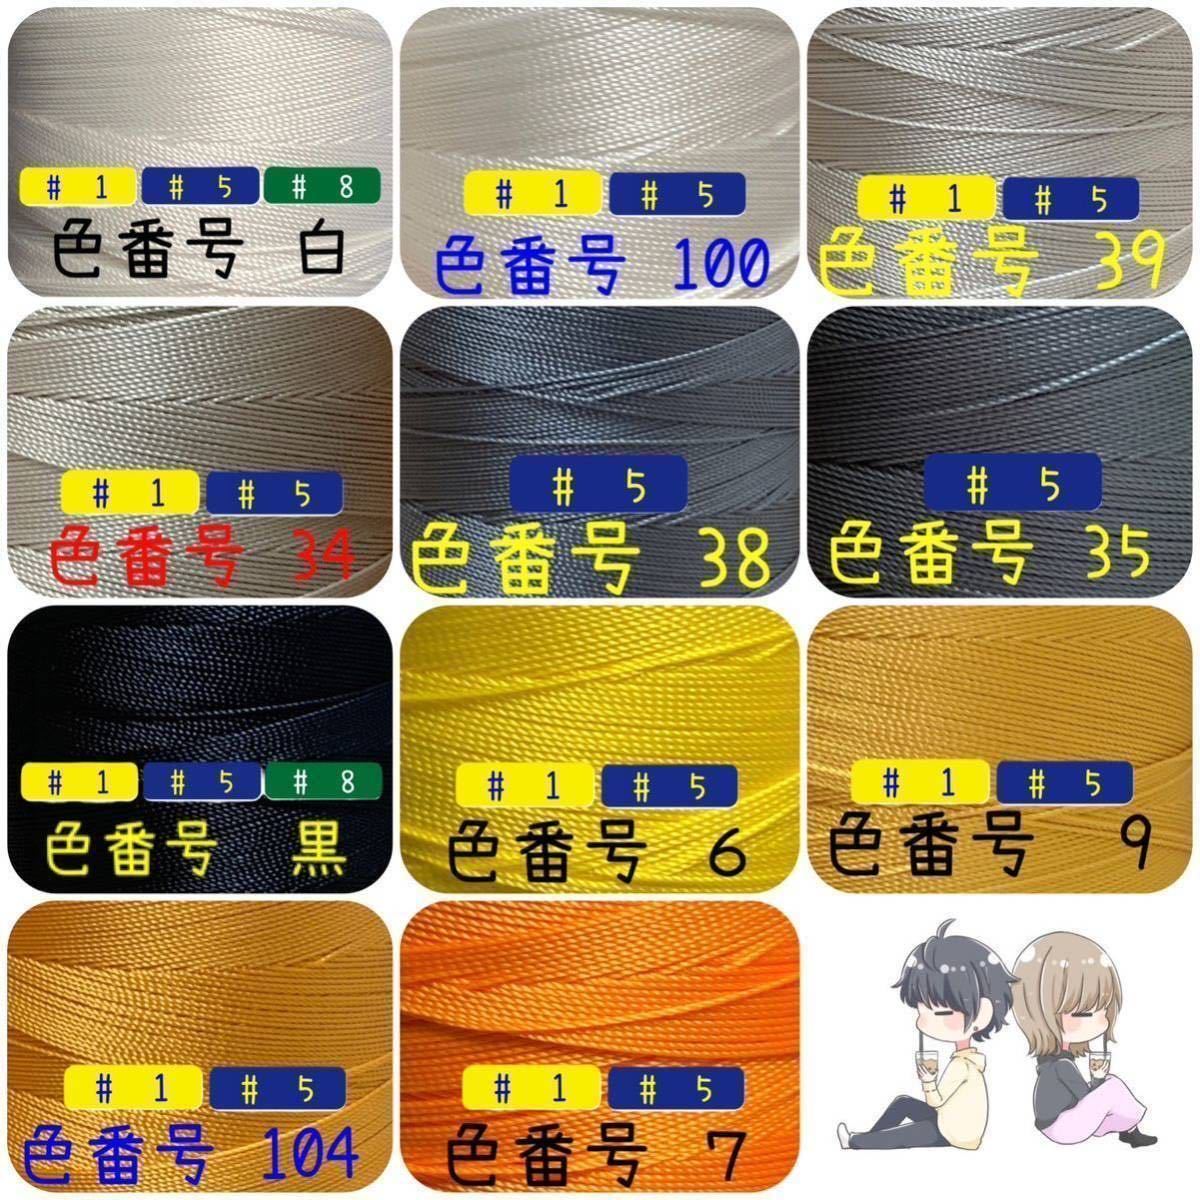 【匿名配送3点】ビニモMBT #1 #5 #8 レザークラフト手縫い糸_画像2